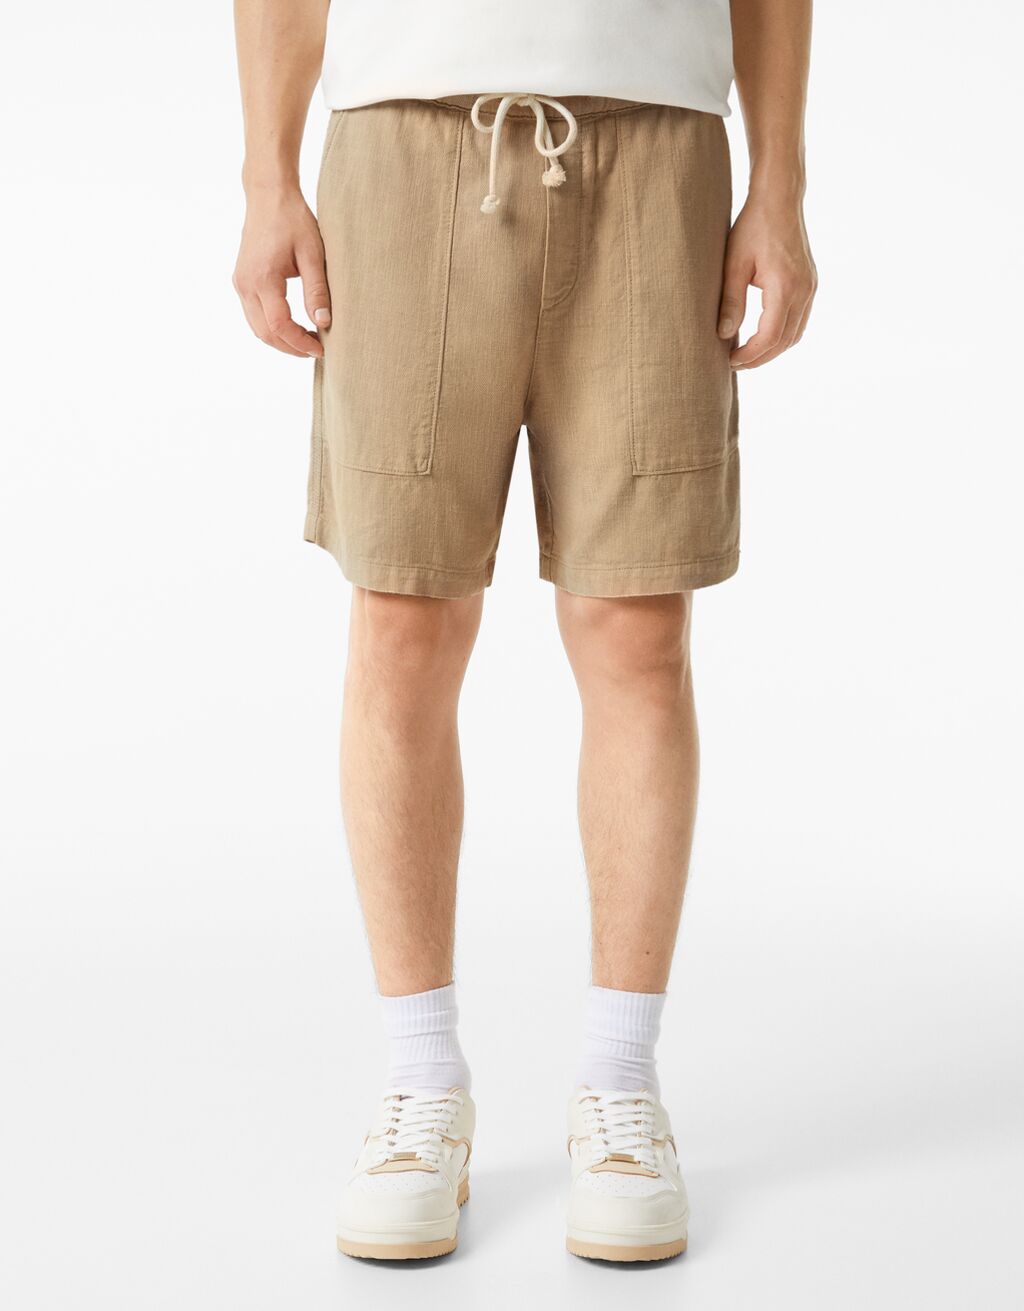 Linen blend cotton Bermuda sweatpant shorts